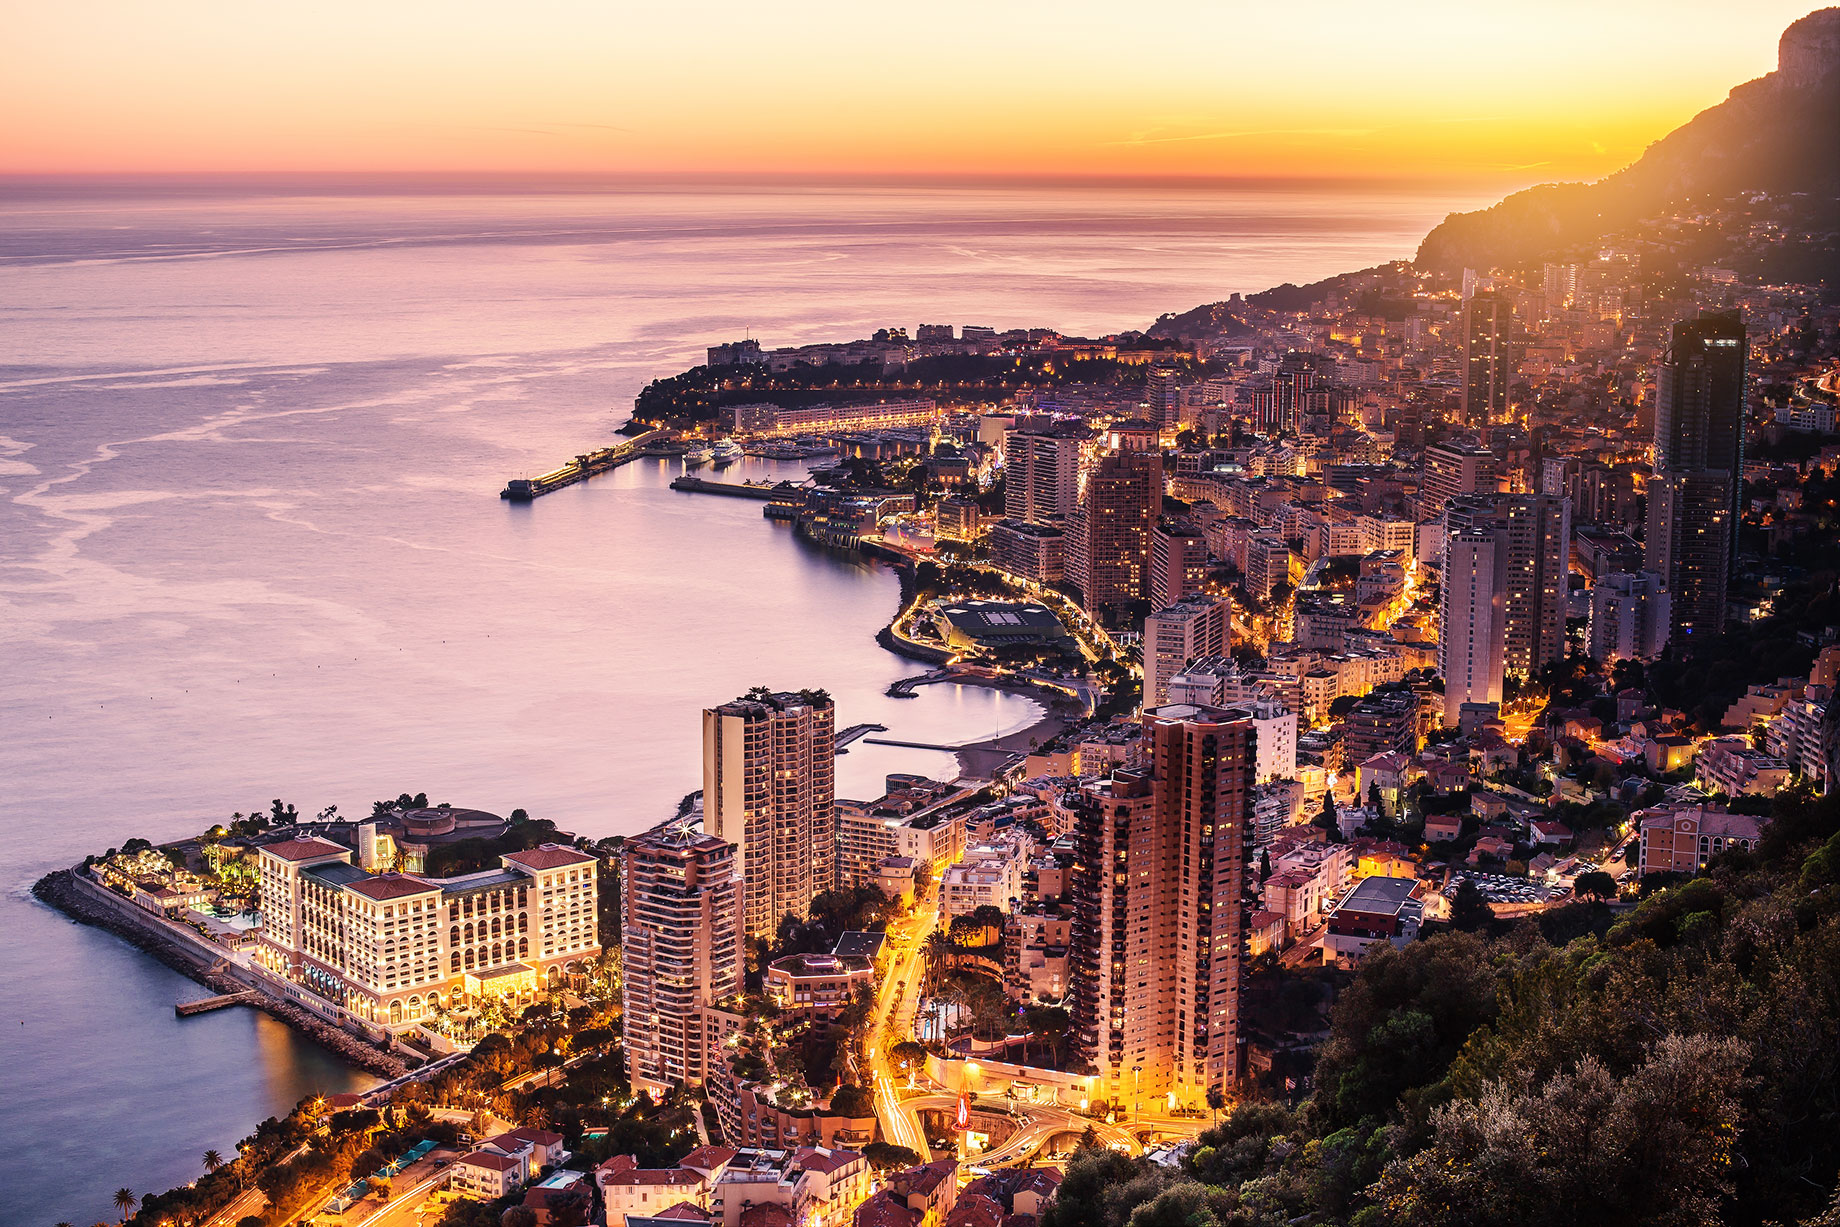 Evening View of Monaco